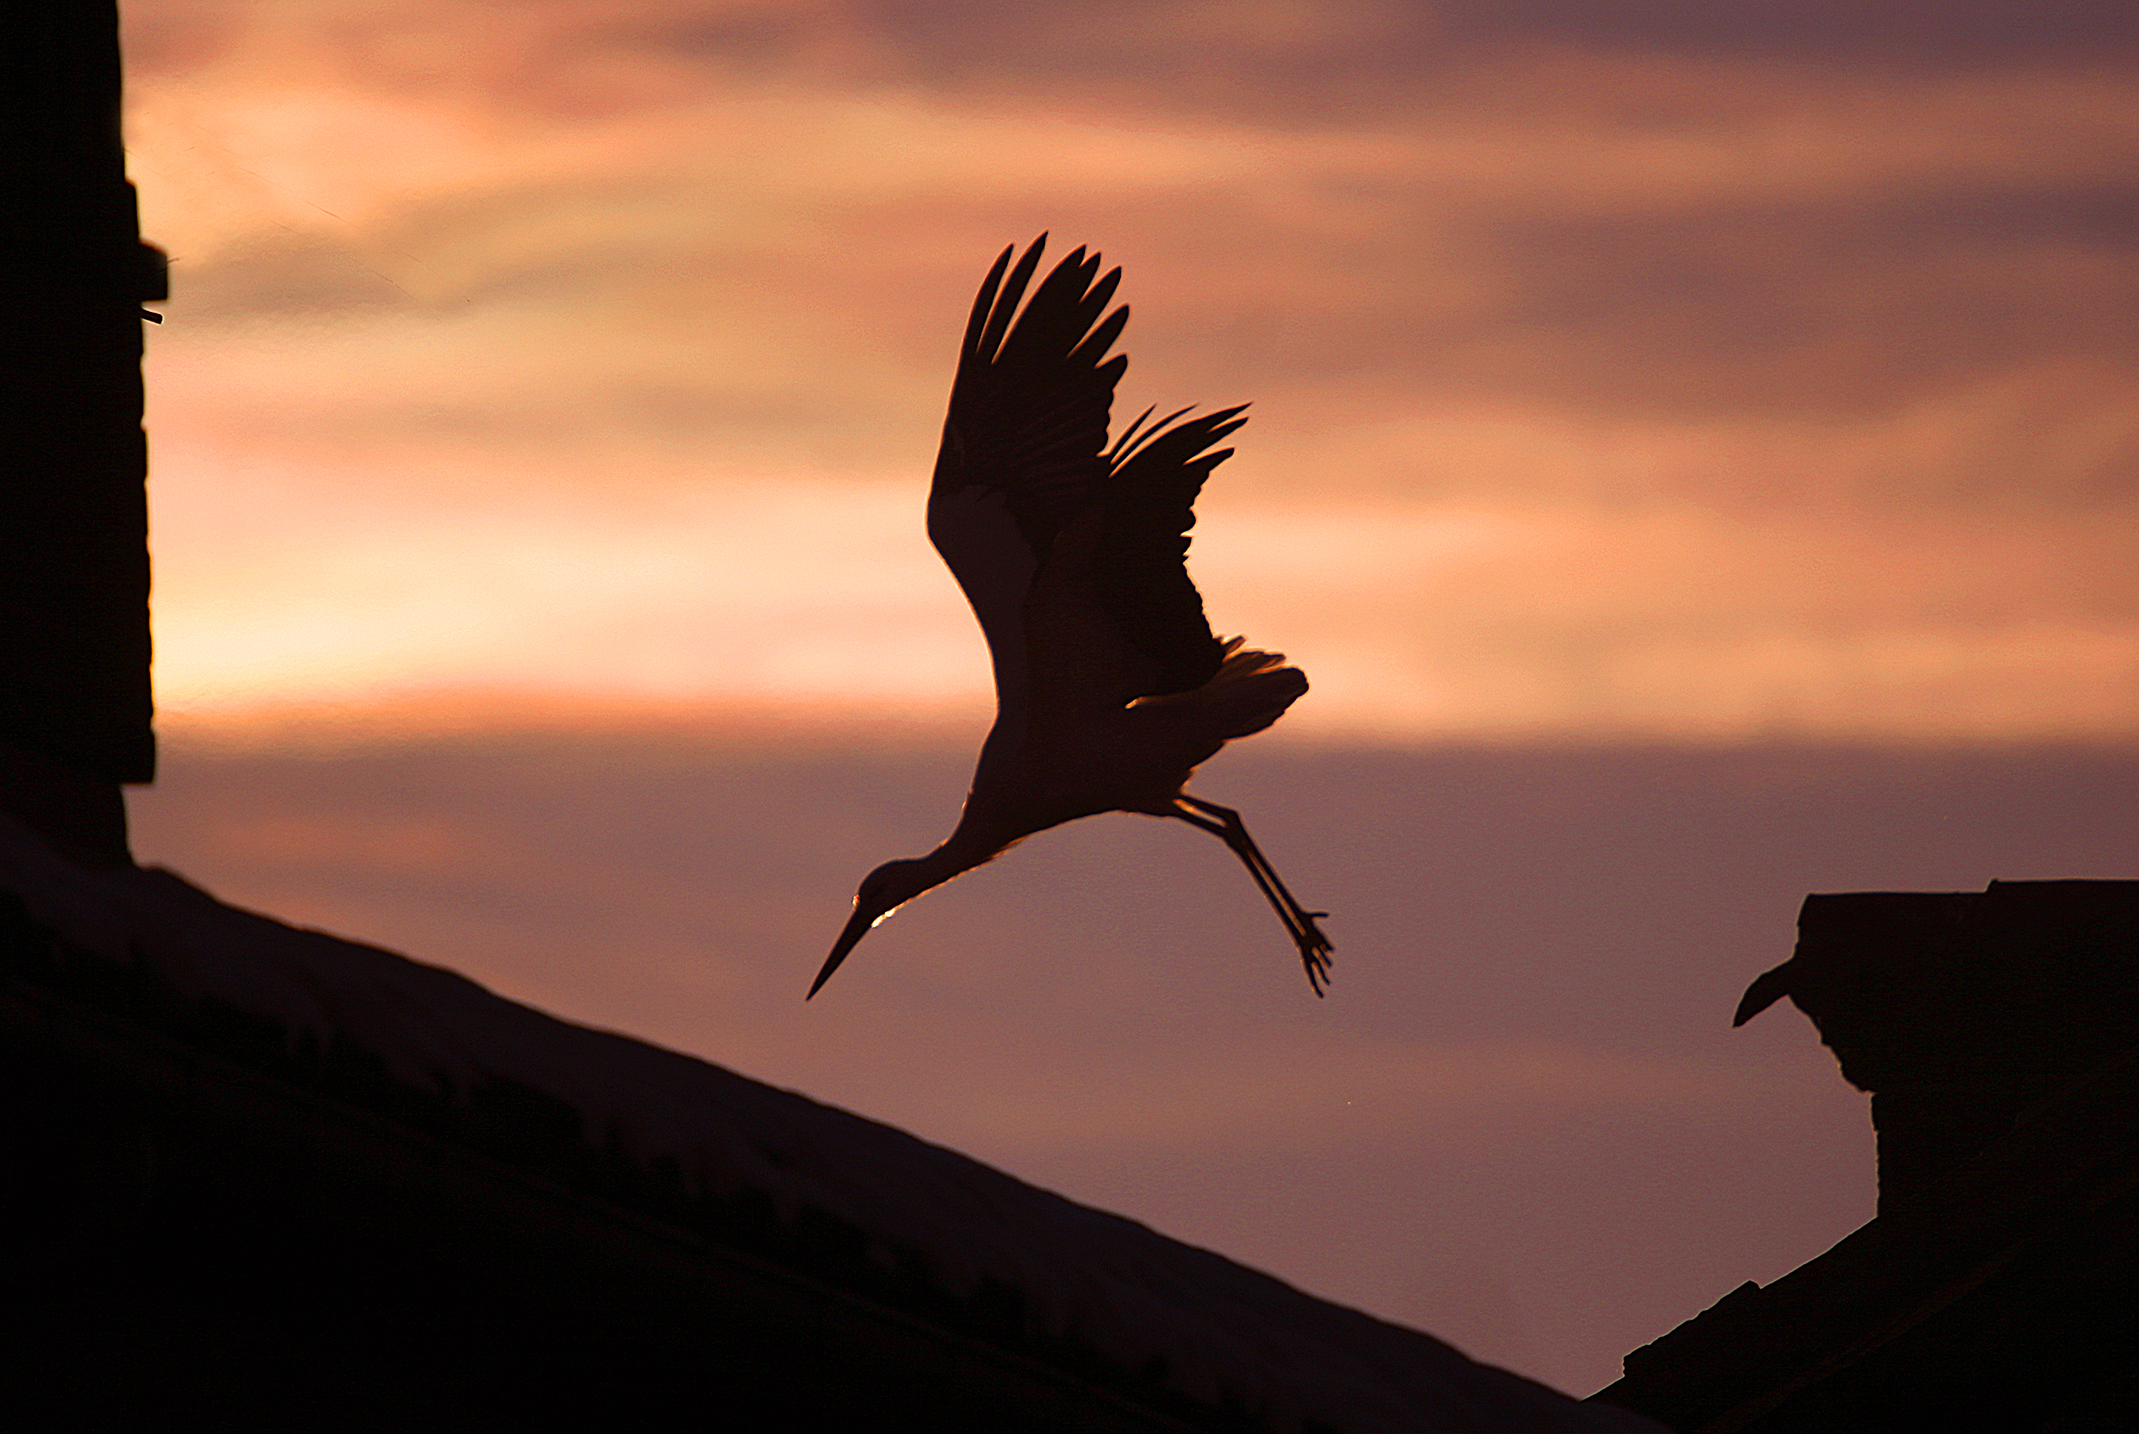 Stork at sunset...